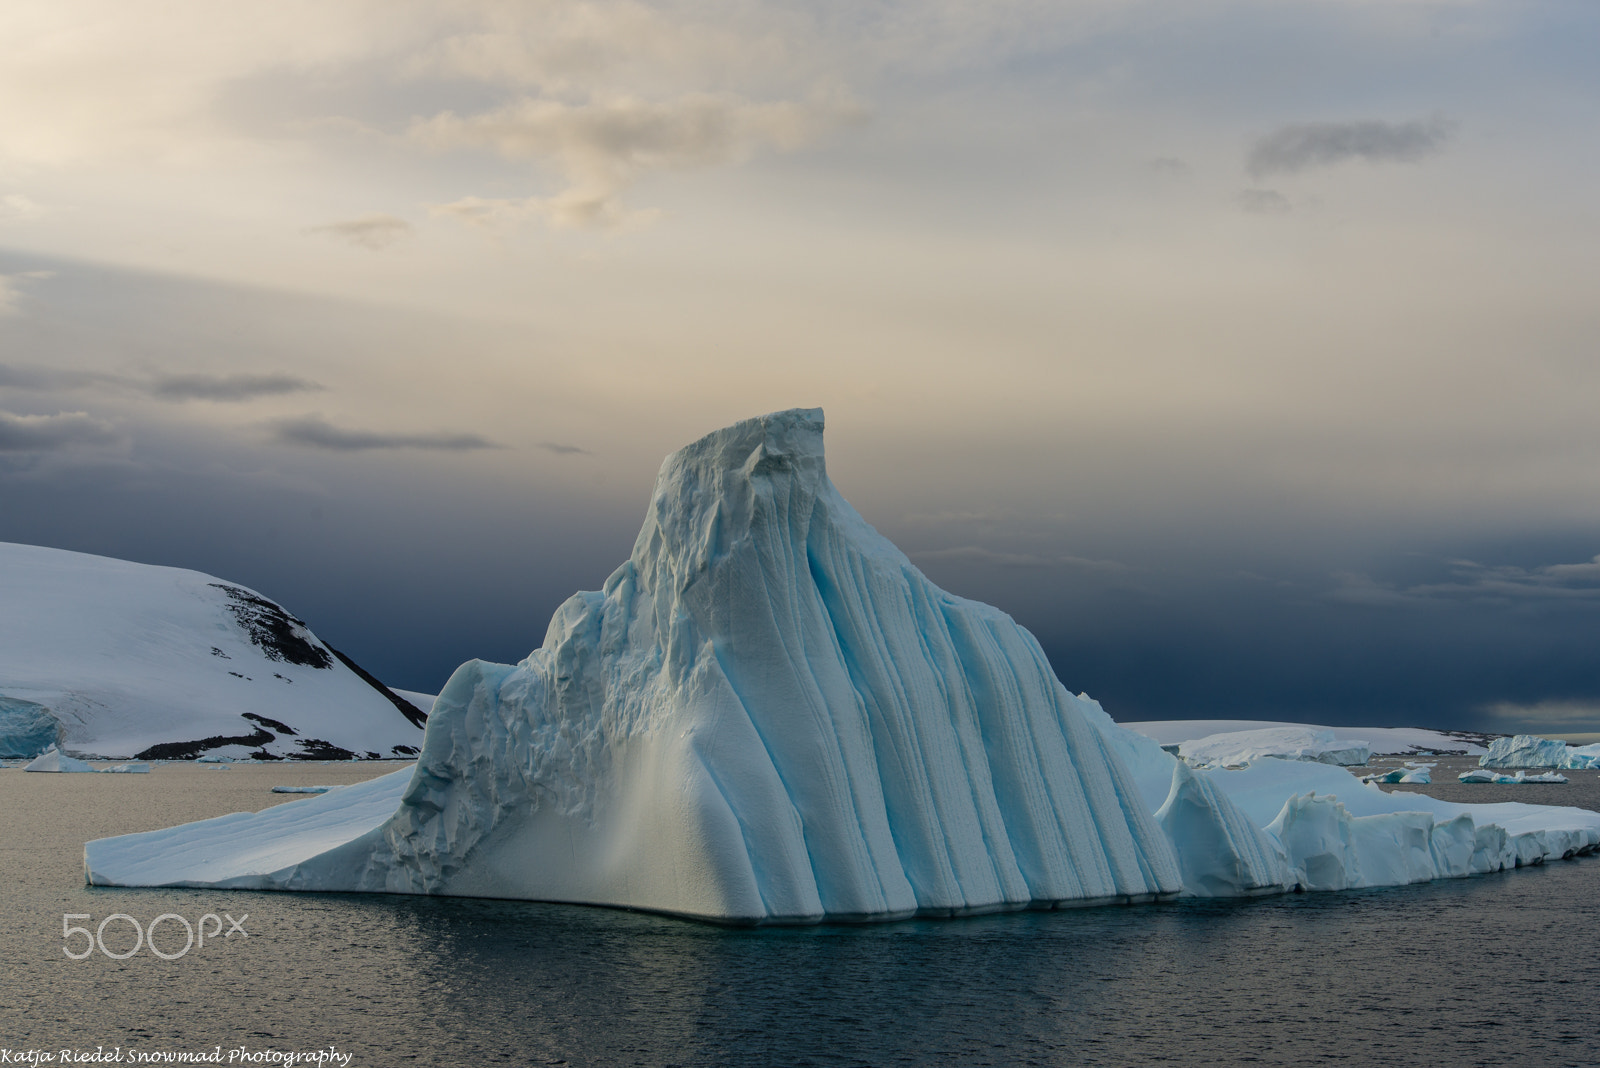 Nikon D600 + Nikon AF-S Nikkor 24-85mm F3.5-4.5G ED VR sample photo. Iceberg with stripes, antarctica photography